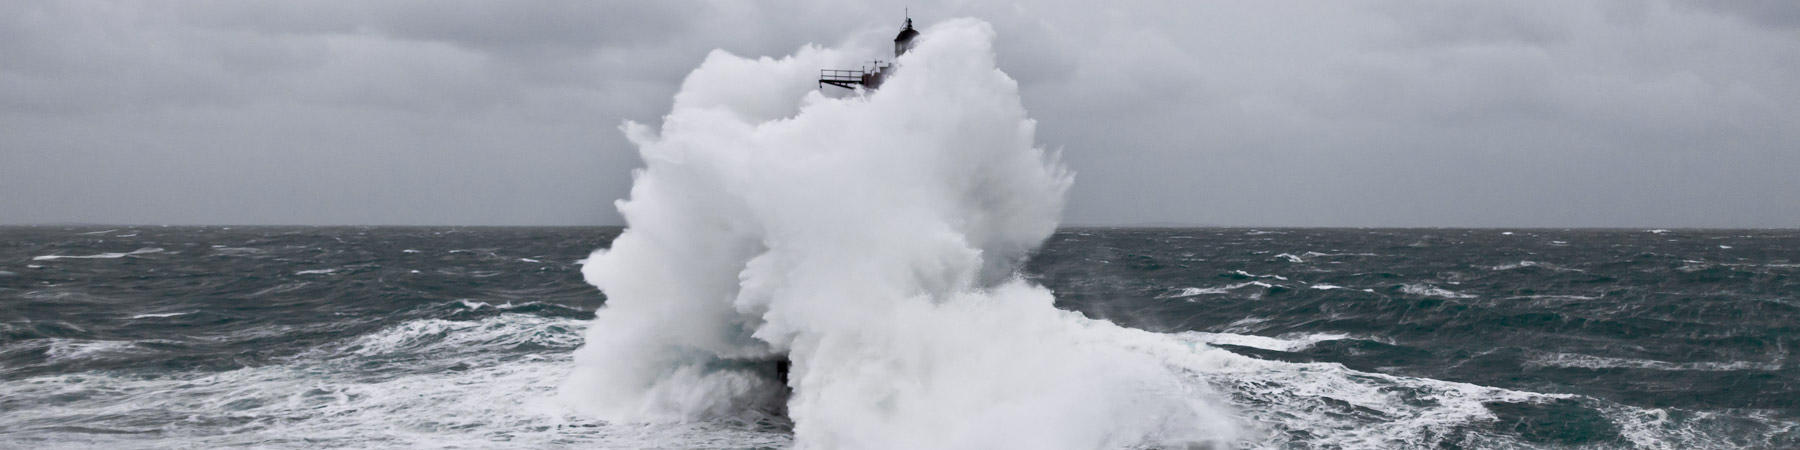 Les tempêtes hivernales sur les côtes bretonnes - Photo Pêcheur d'Images